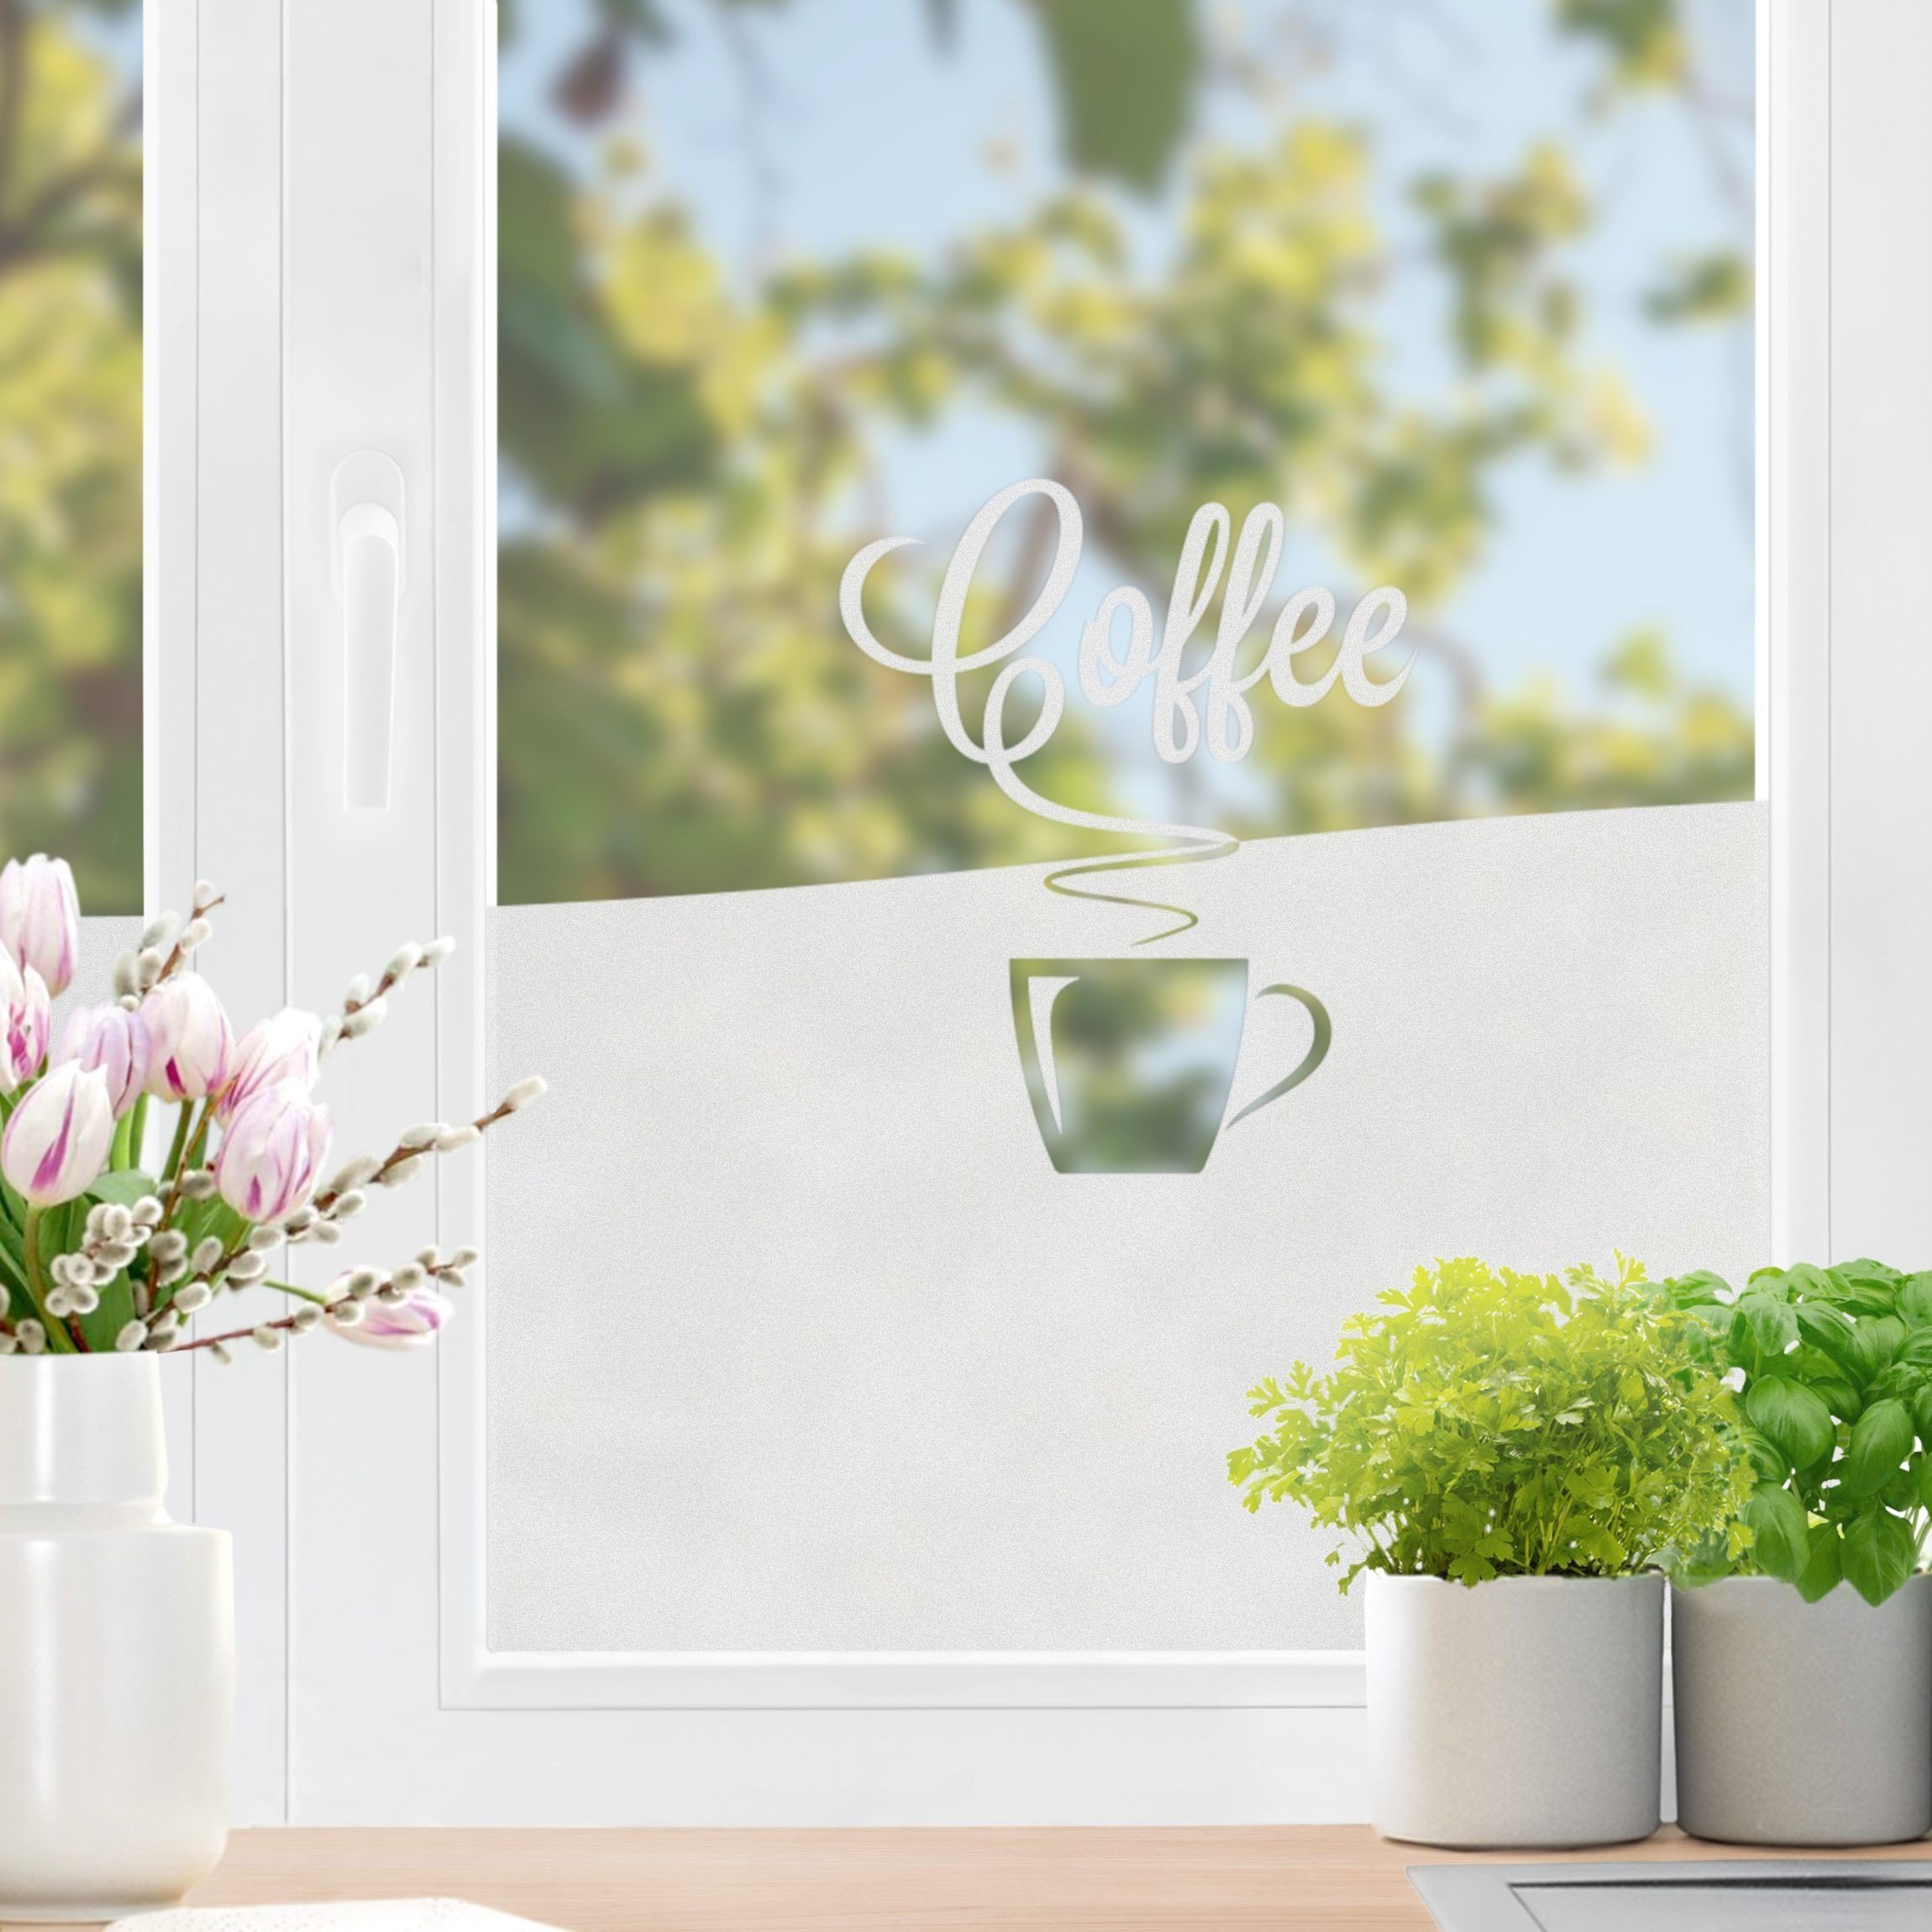 Fensterfolie statisch haftend Motiv Fensterdeko Heißer Kaffee